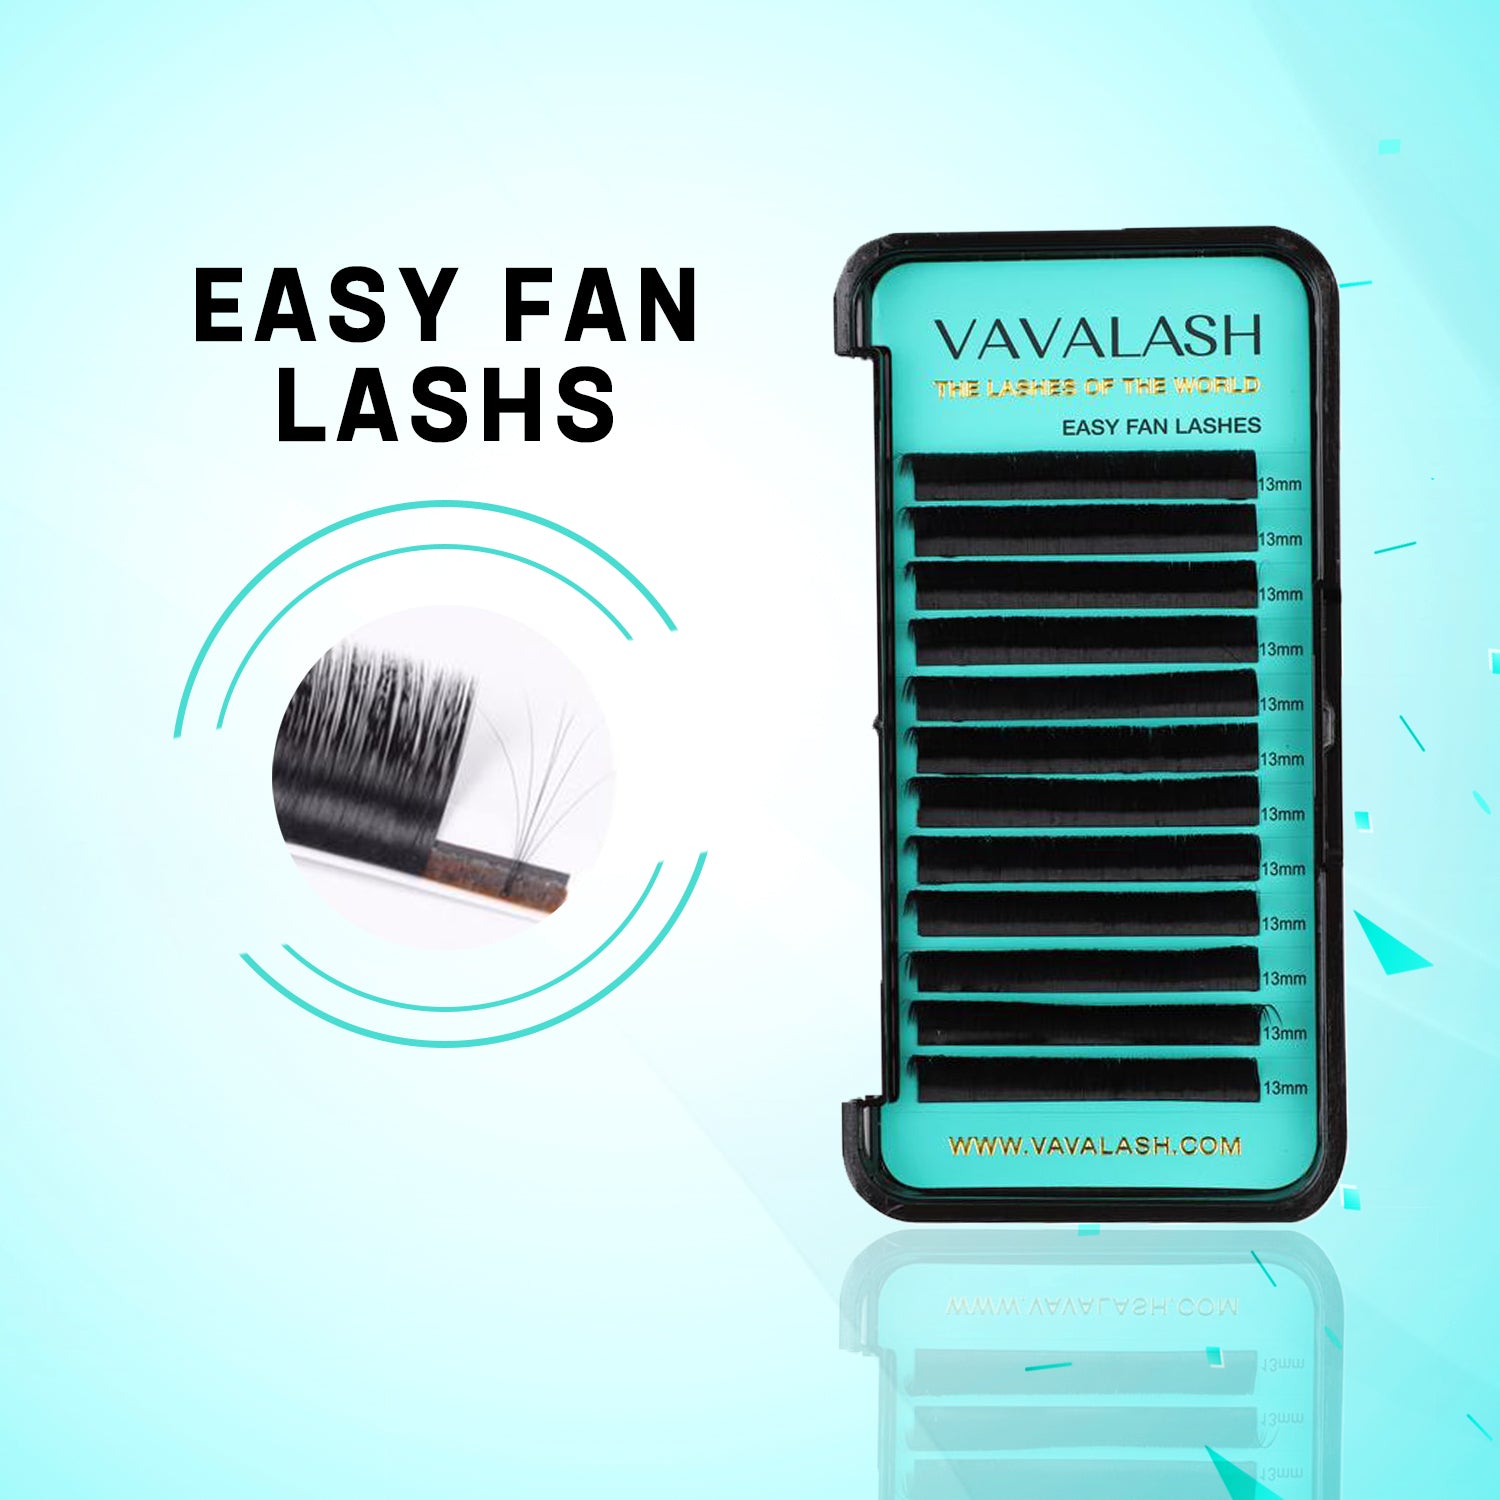 Mega Volume Easy Fan Lash Extensions 0.03mm EASY FAN avainsh LASHS WYY W.VAVALASH,COM 